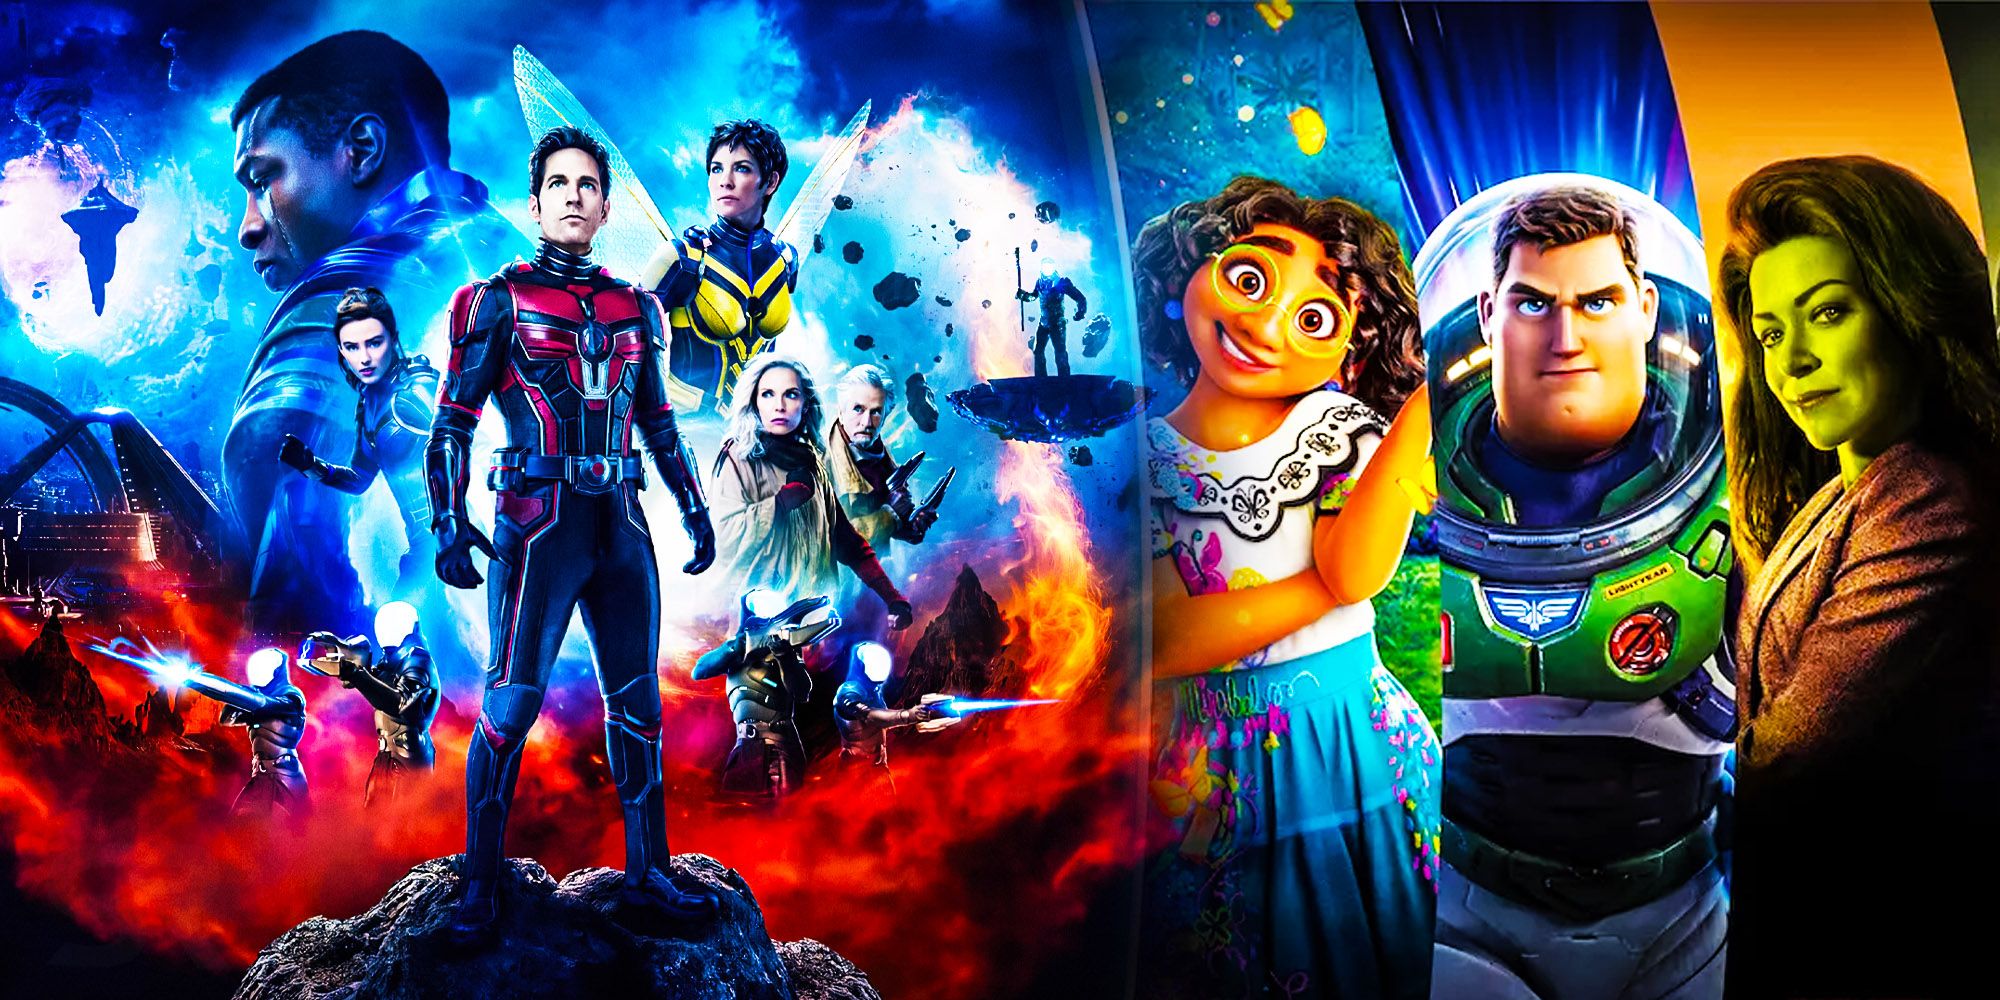 Universo Marvel 616: Homem-Formiga e a Vespa: Quantumania coloca Disney+ no  topo da lista dentre os streamers